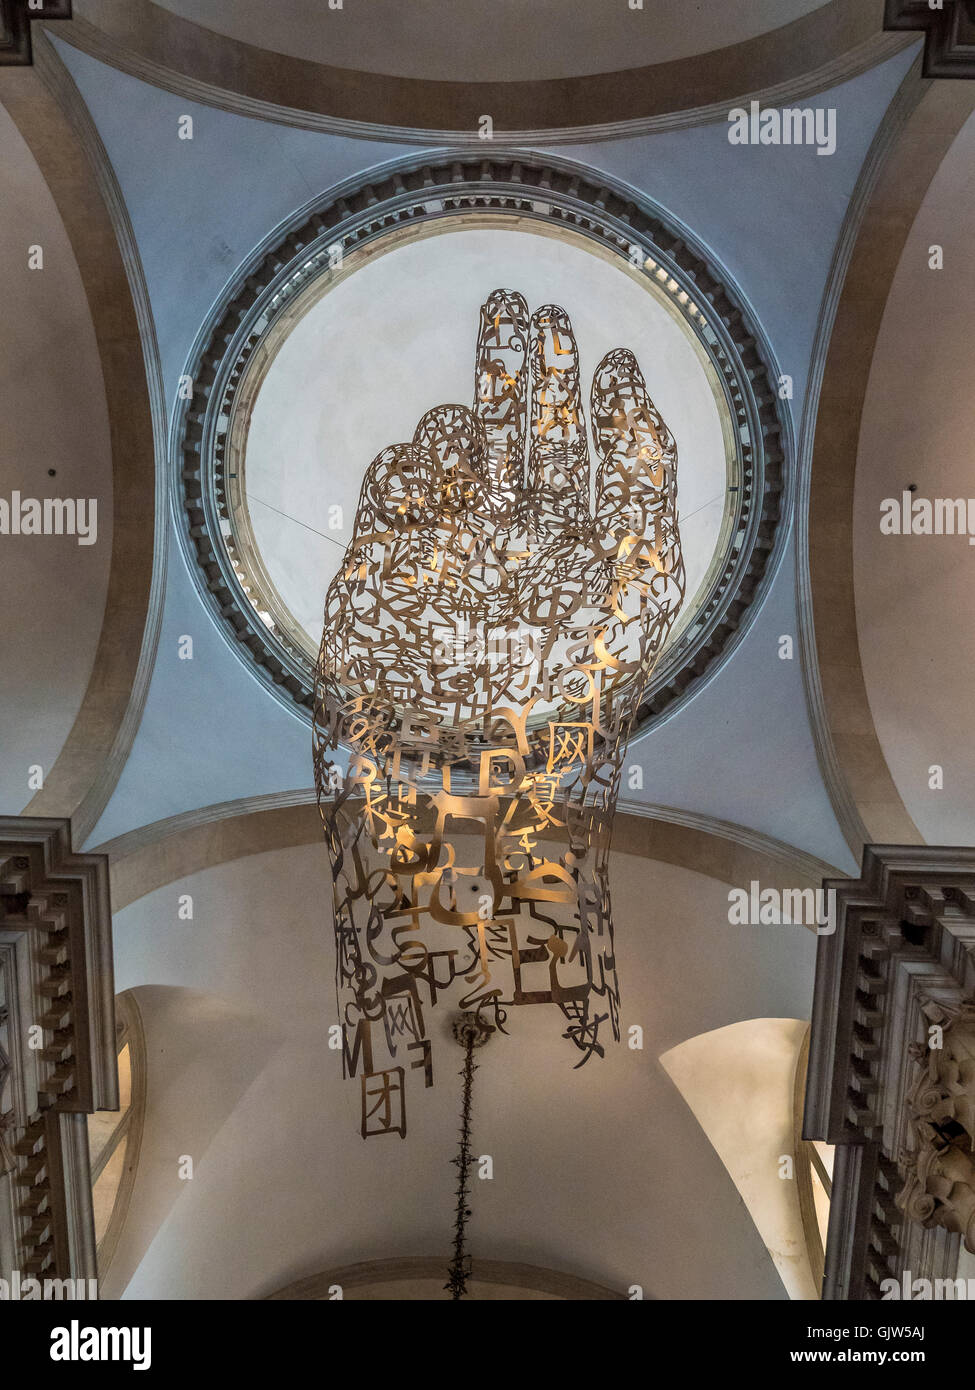 La bendición la mano "Juntos" por Jaume Plensa, escultura en metal suspendido sobre el crucero, debajo de la cúpula de techo. San Giorgio Foto de stock